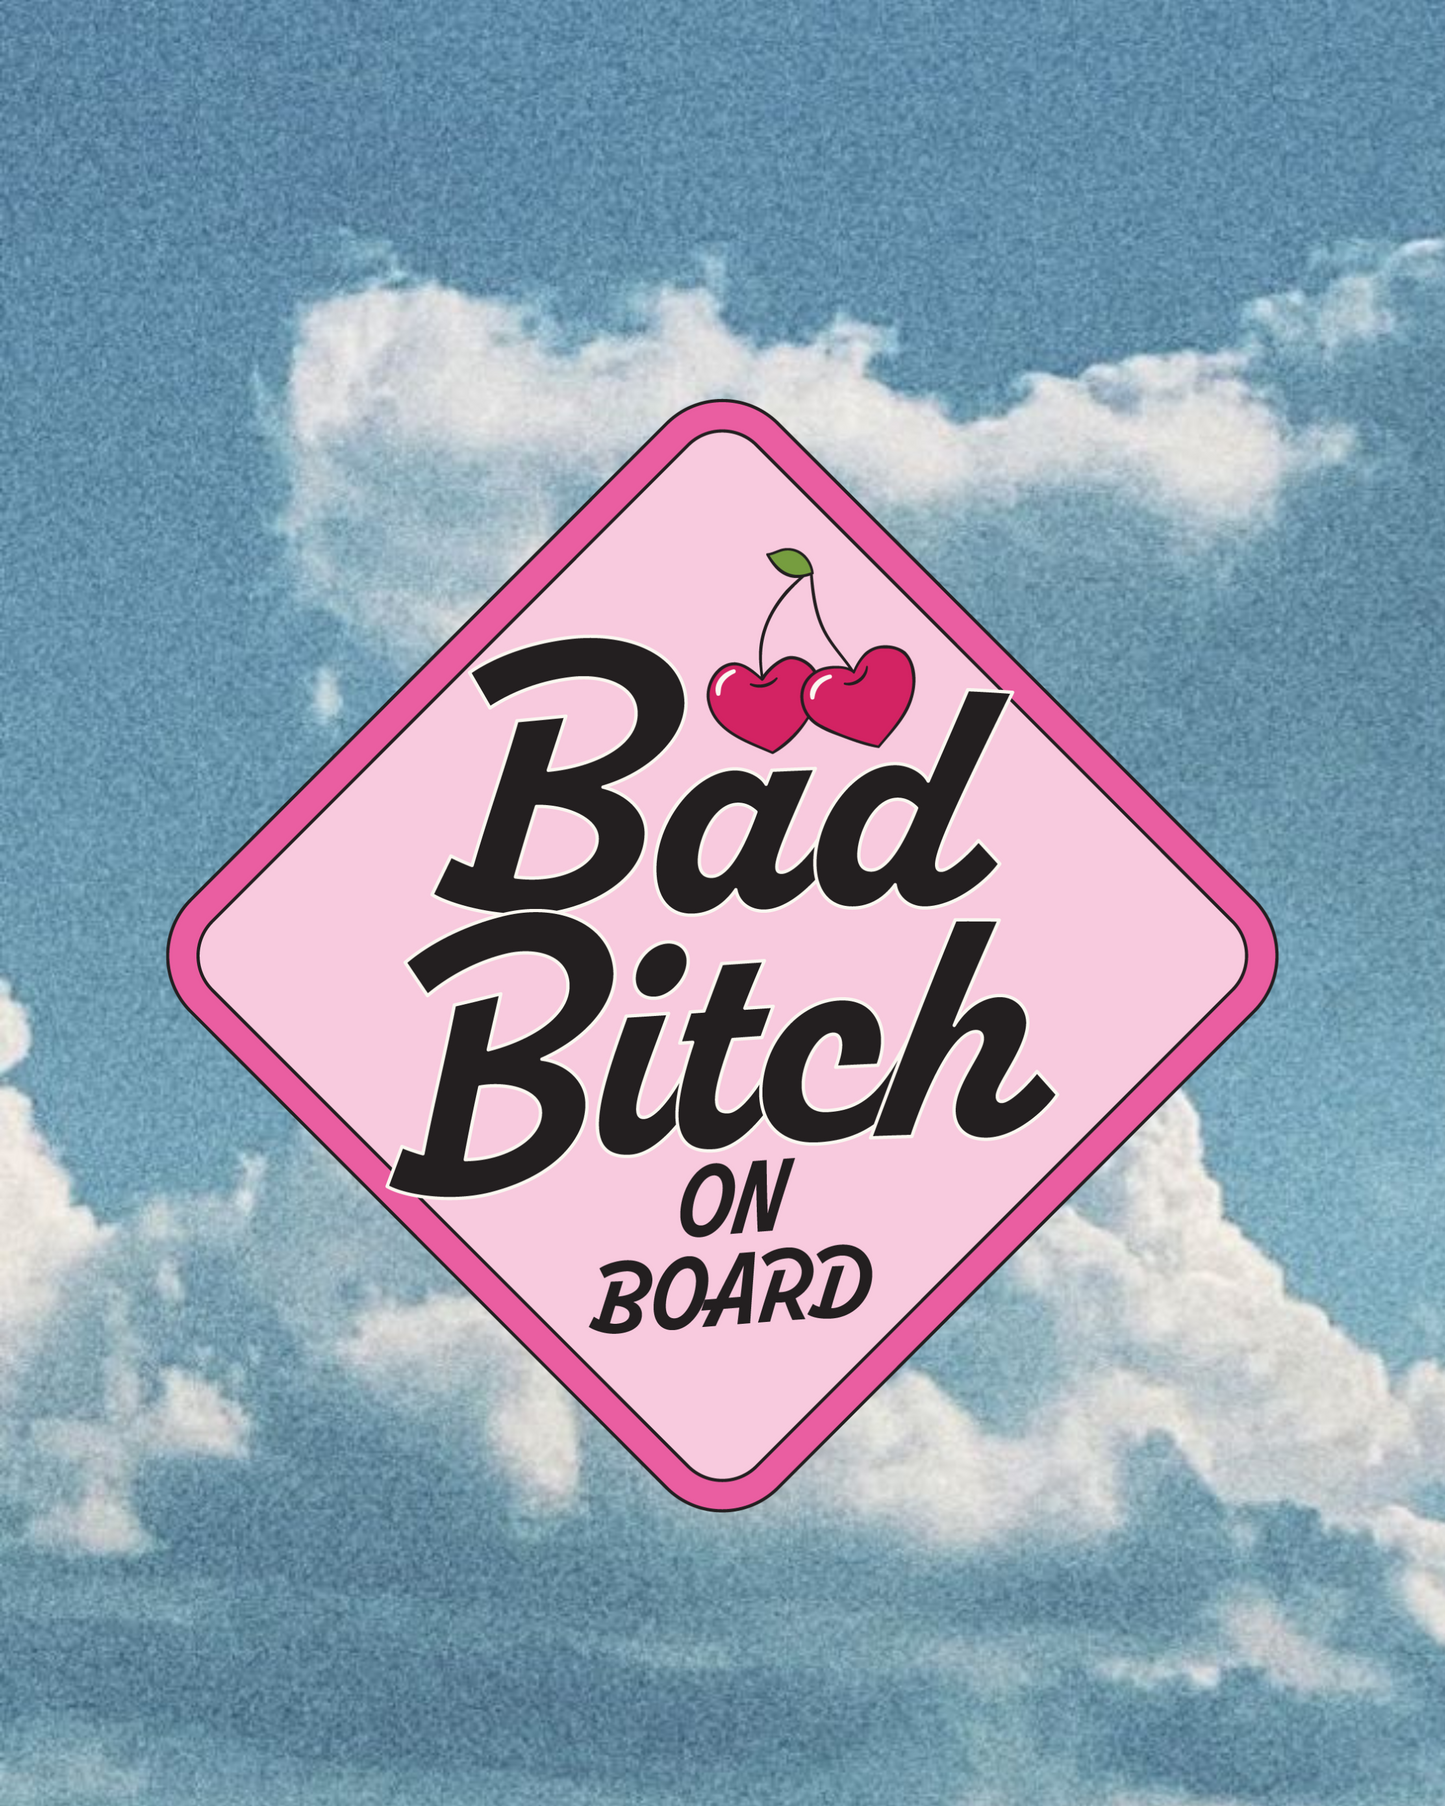 Bad B*tch on board - Bumper Sticker